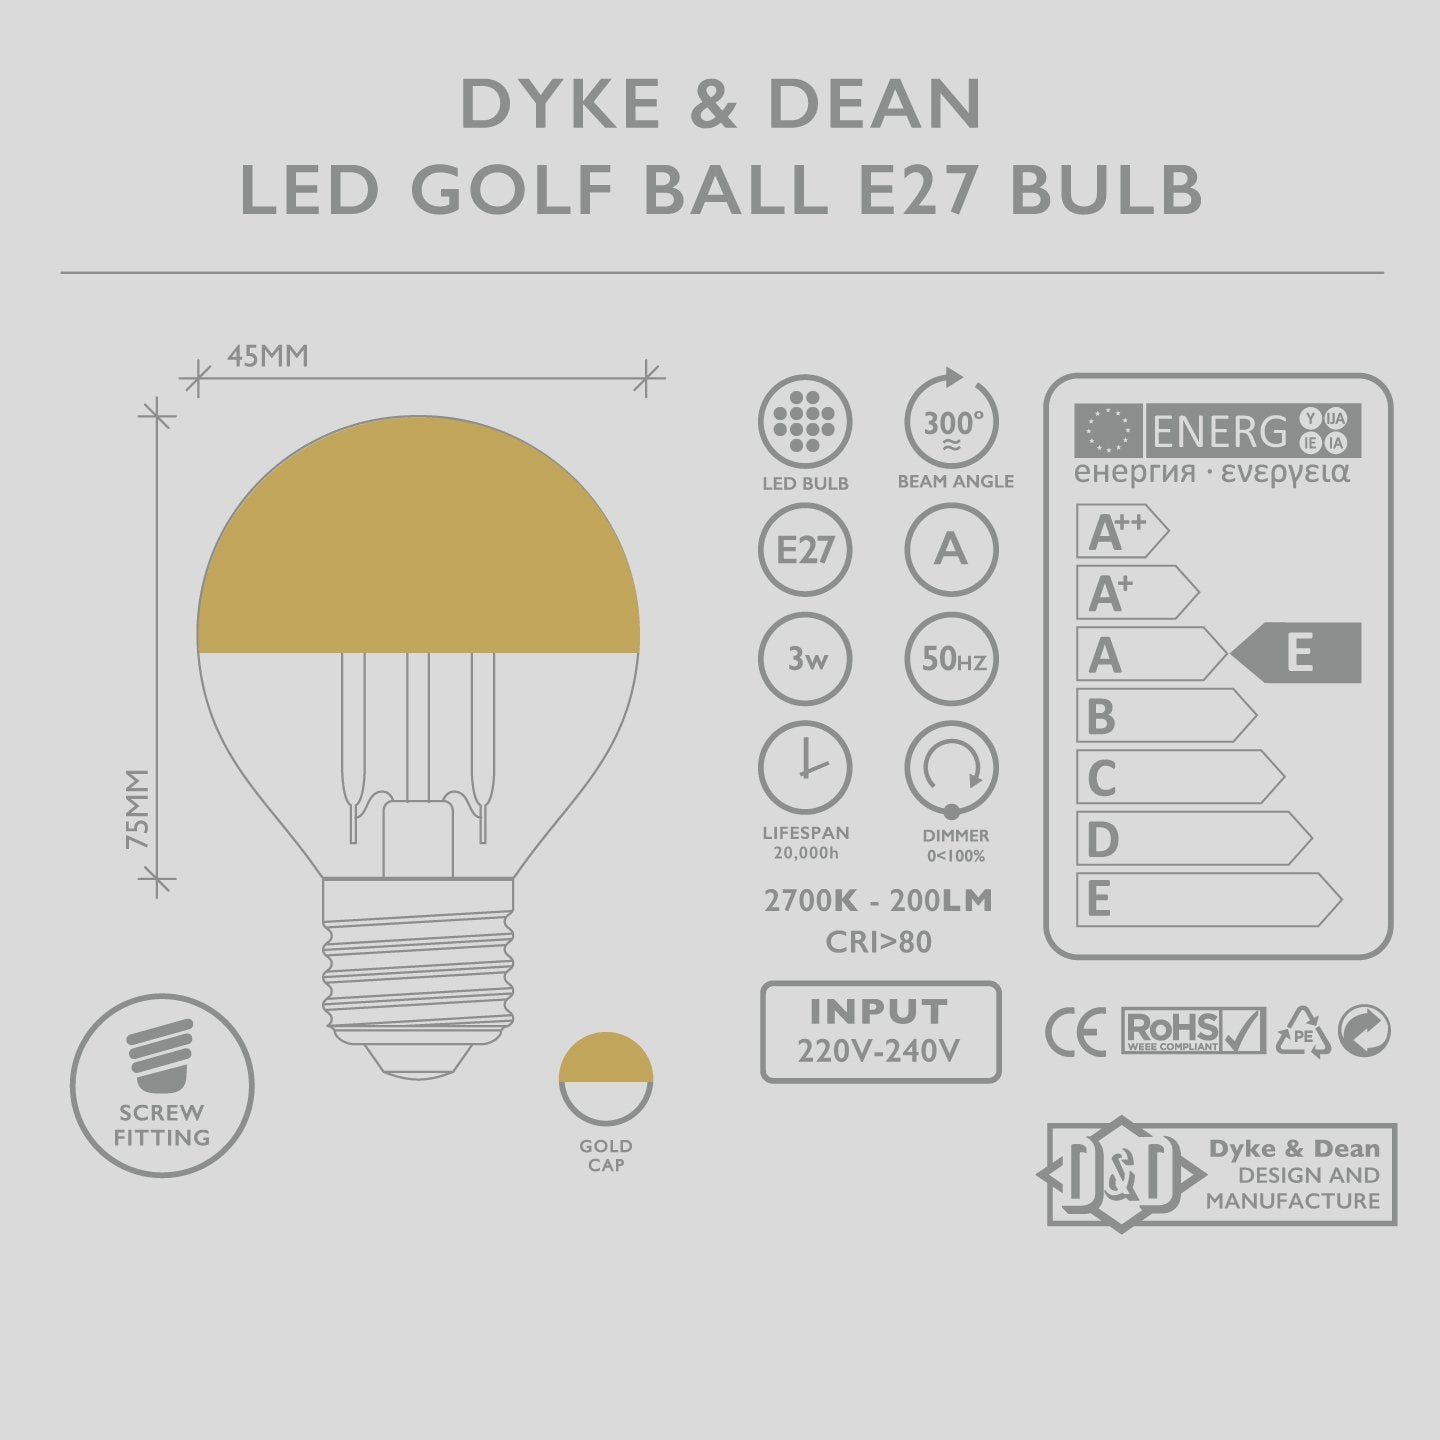 DYKE & DEAN LED GOLD CAP GOLF BALL E27 BULB - DYKE & DEAN